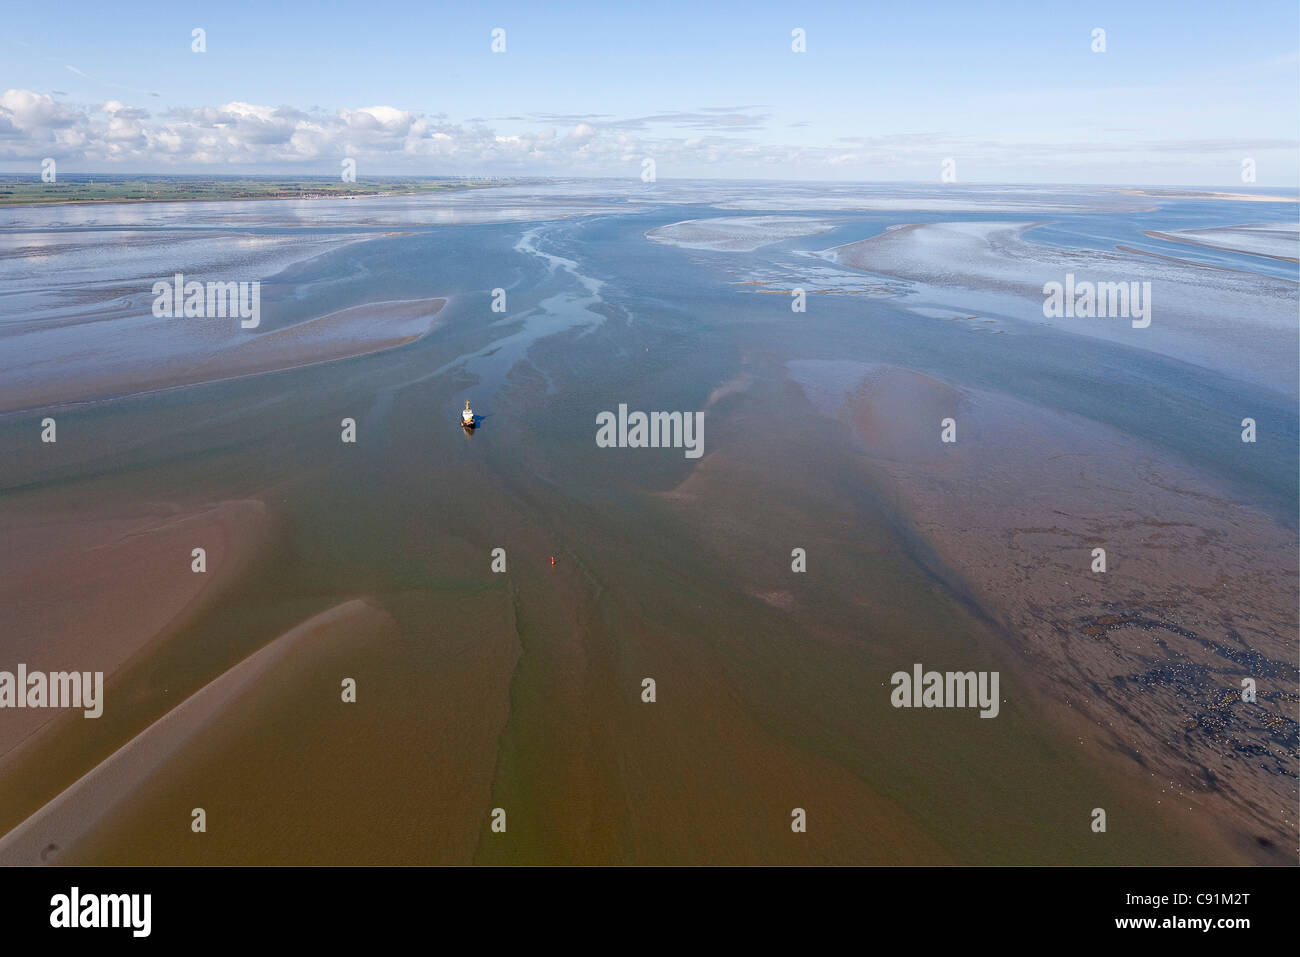 Vue aérienne de vasières tidales avec embarcation échouée, mer des Wadden, Basse-Saxe, Allemagne Banque D'Images